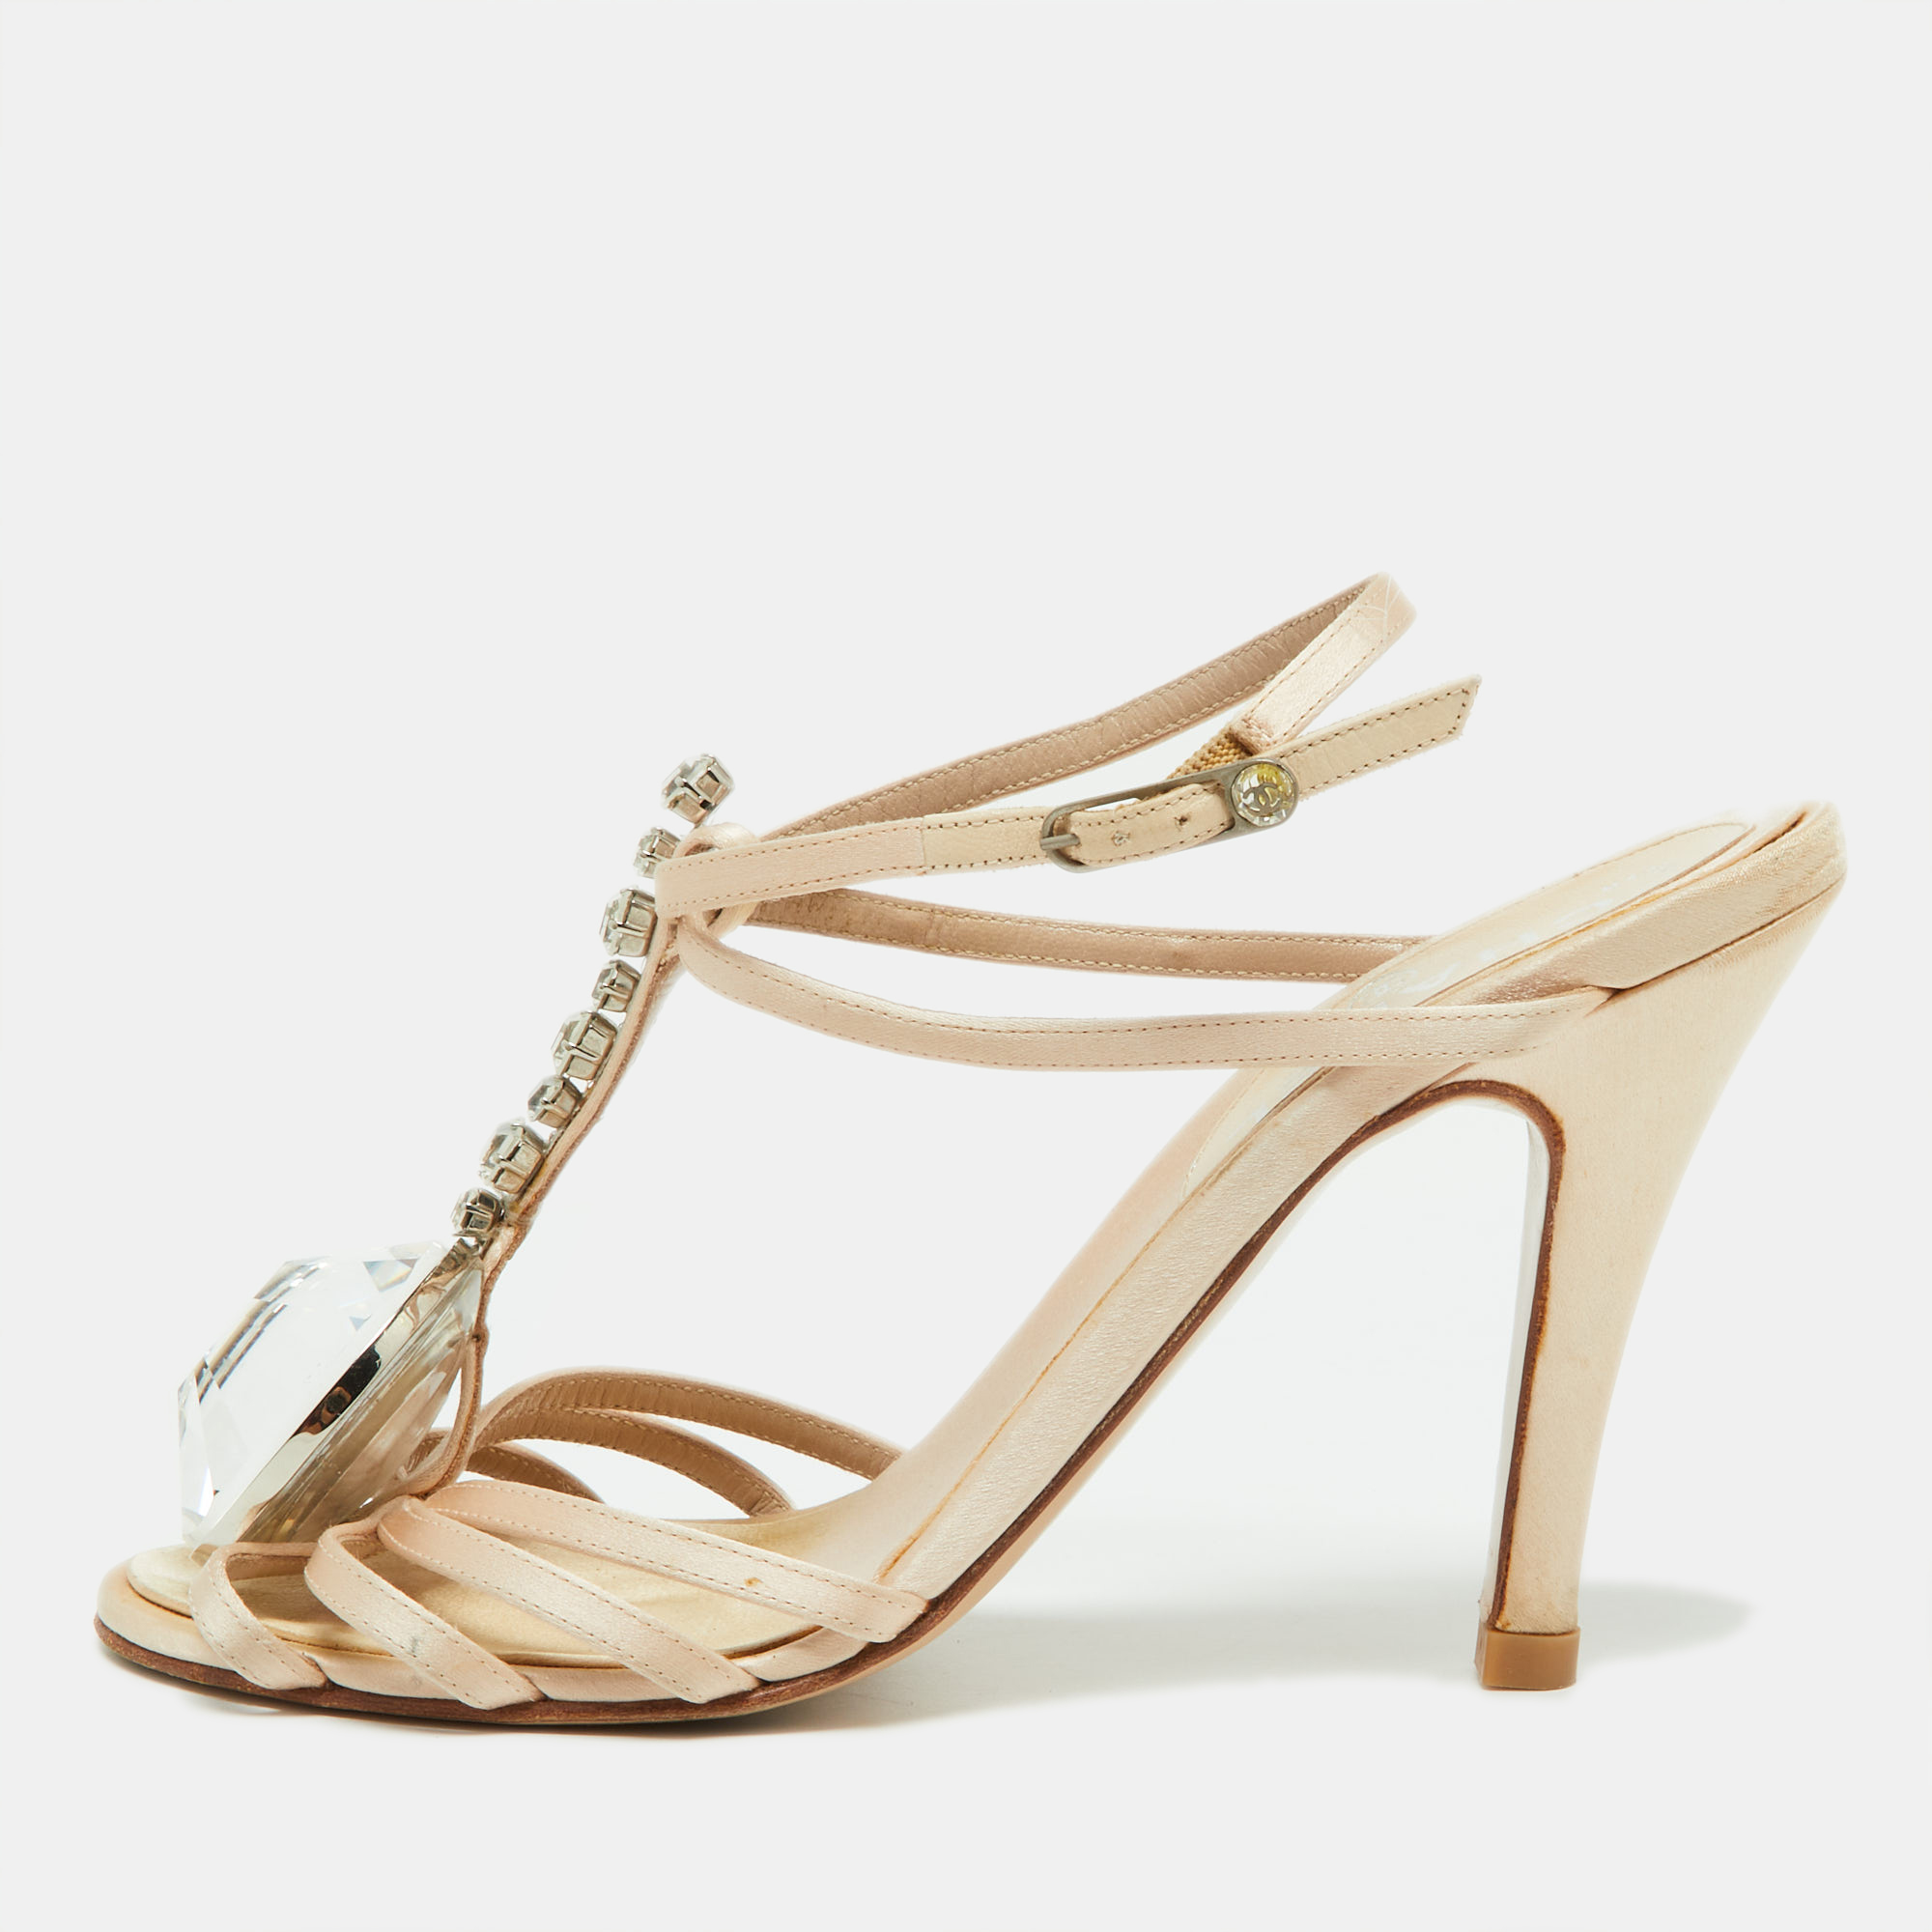 Chanel  beige satin crystal embellished slingback sandals size 39.5